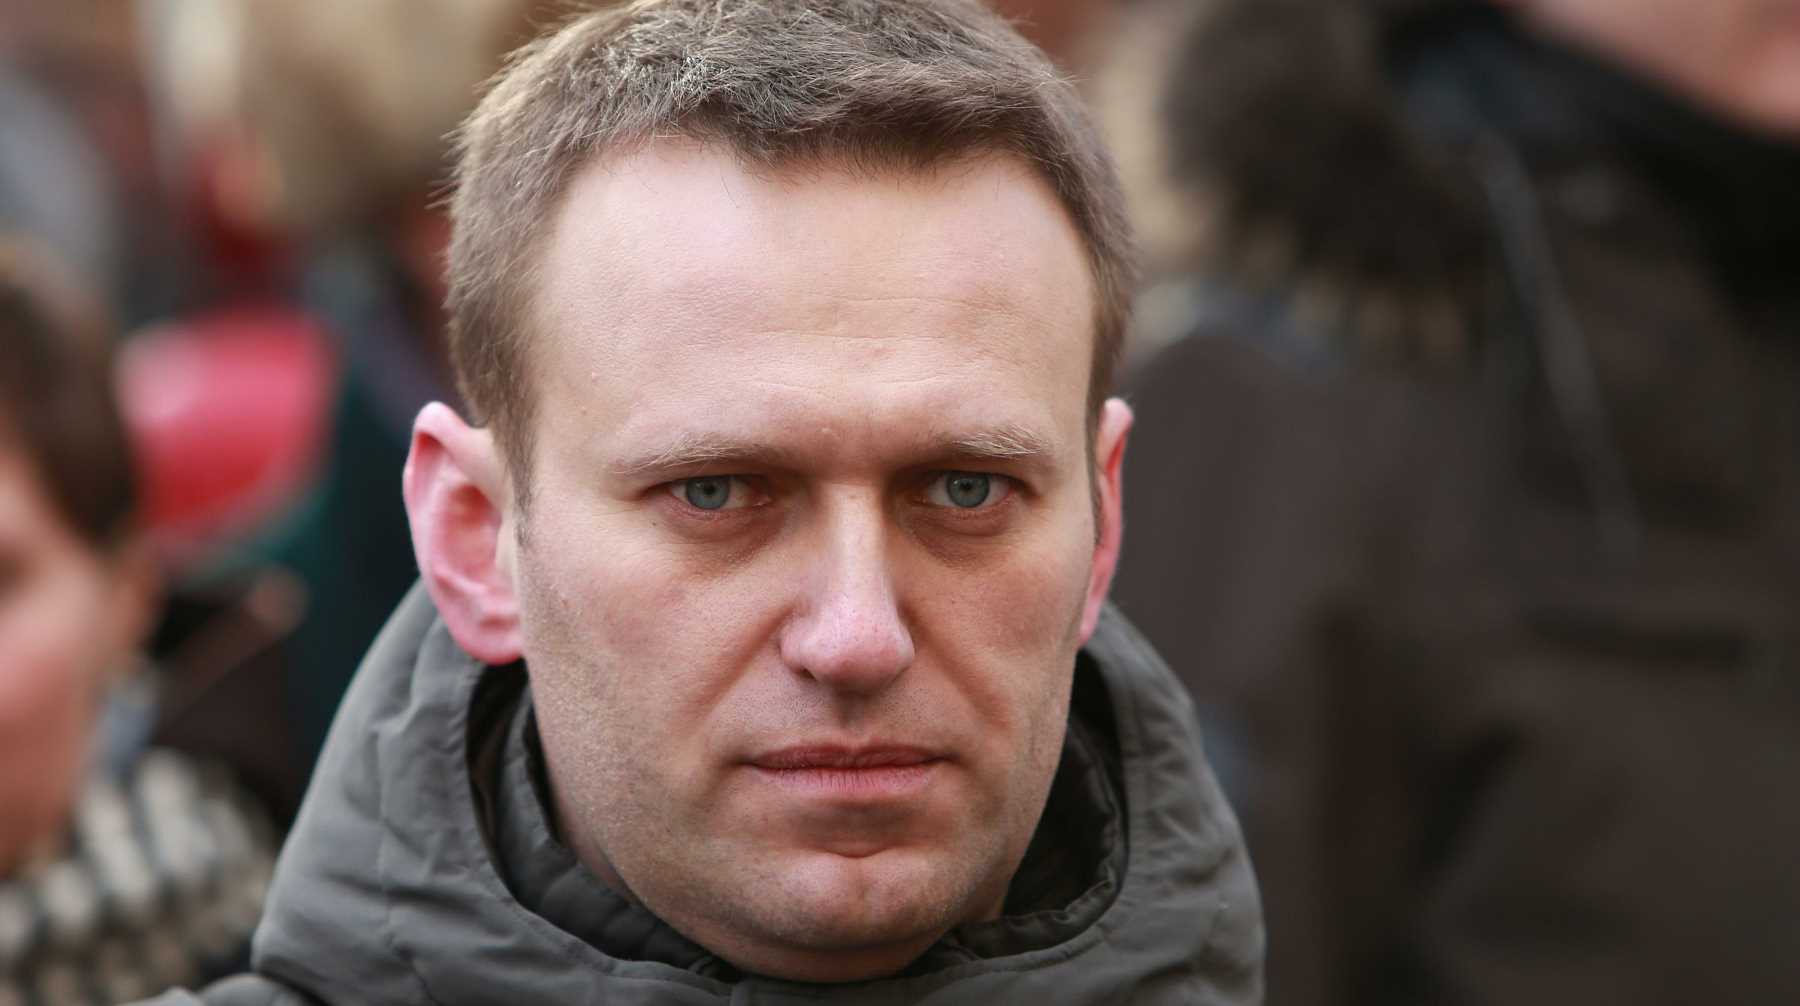 Dailystorm - Суд назначил дату рассмотрения иска Навального к Пескову